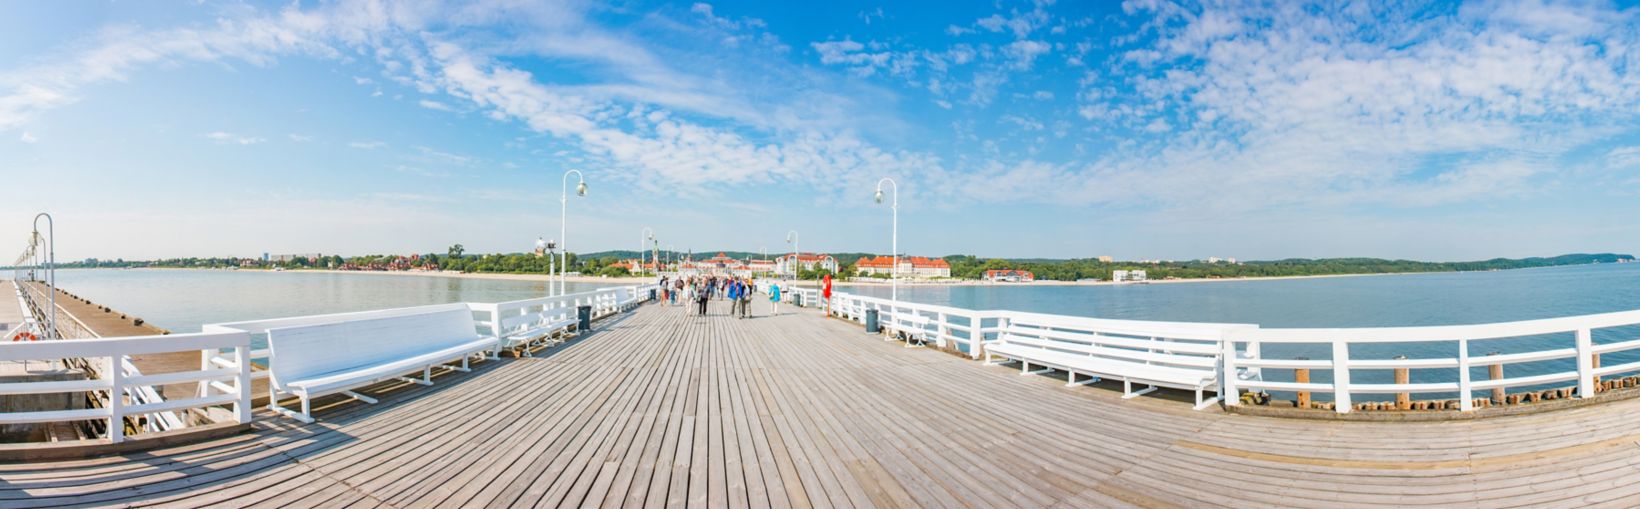 Blick auf Spaziergänger am Sopot Pier in Gdynia, Polen, an einem sonnigen Tag.